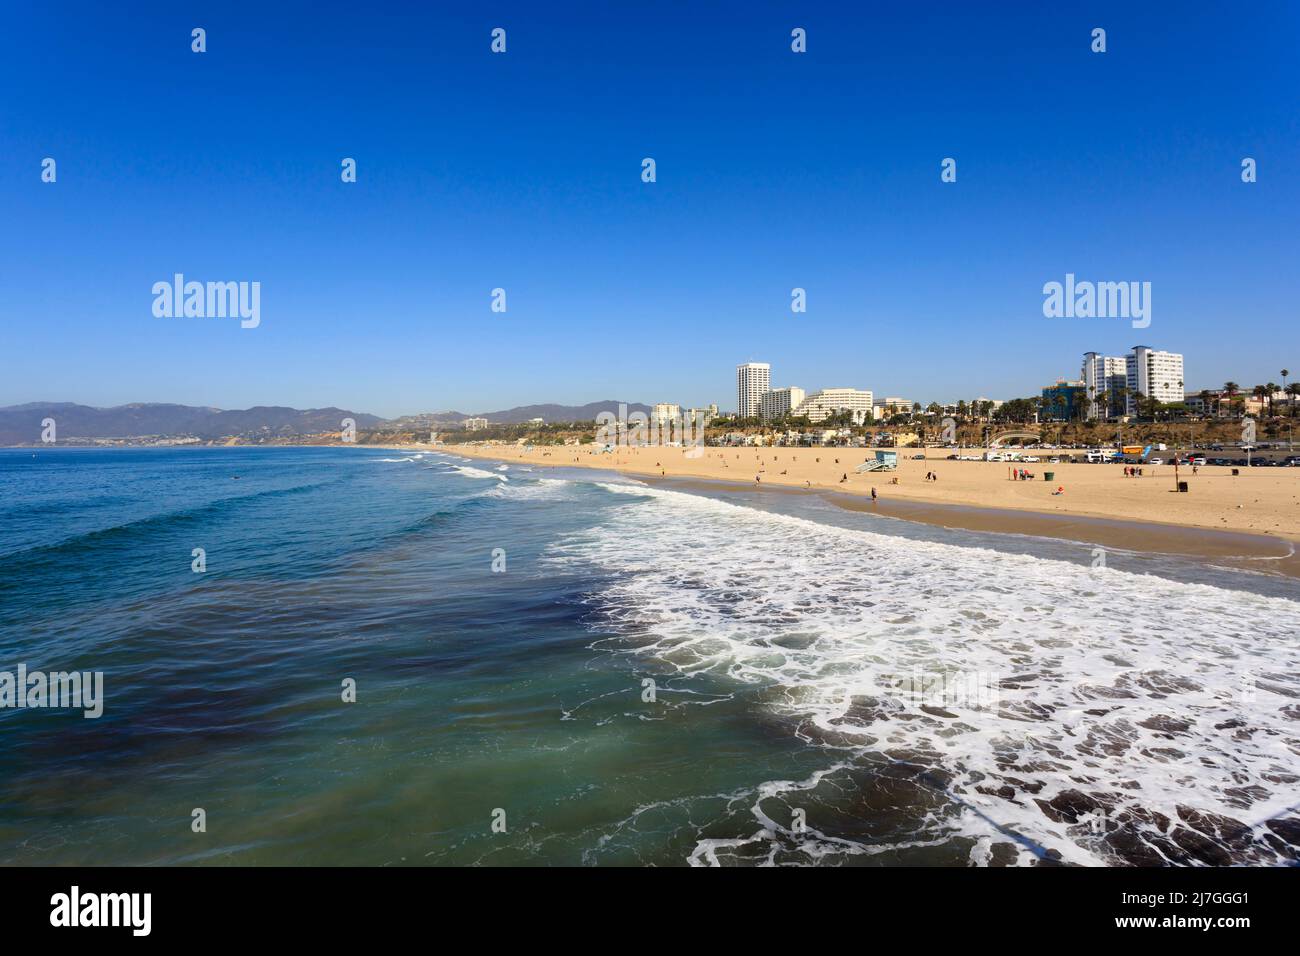 Surfen und Meer am Strand. Gebäude und Menschen in der Innenstadt. Santa Monica, California, Vereinigte Staaten von Amerika. USA. Oktober 2019 Stockfoto